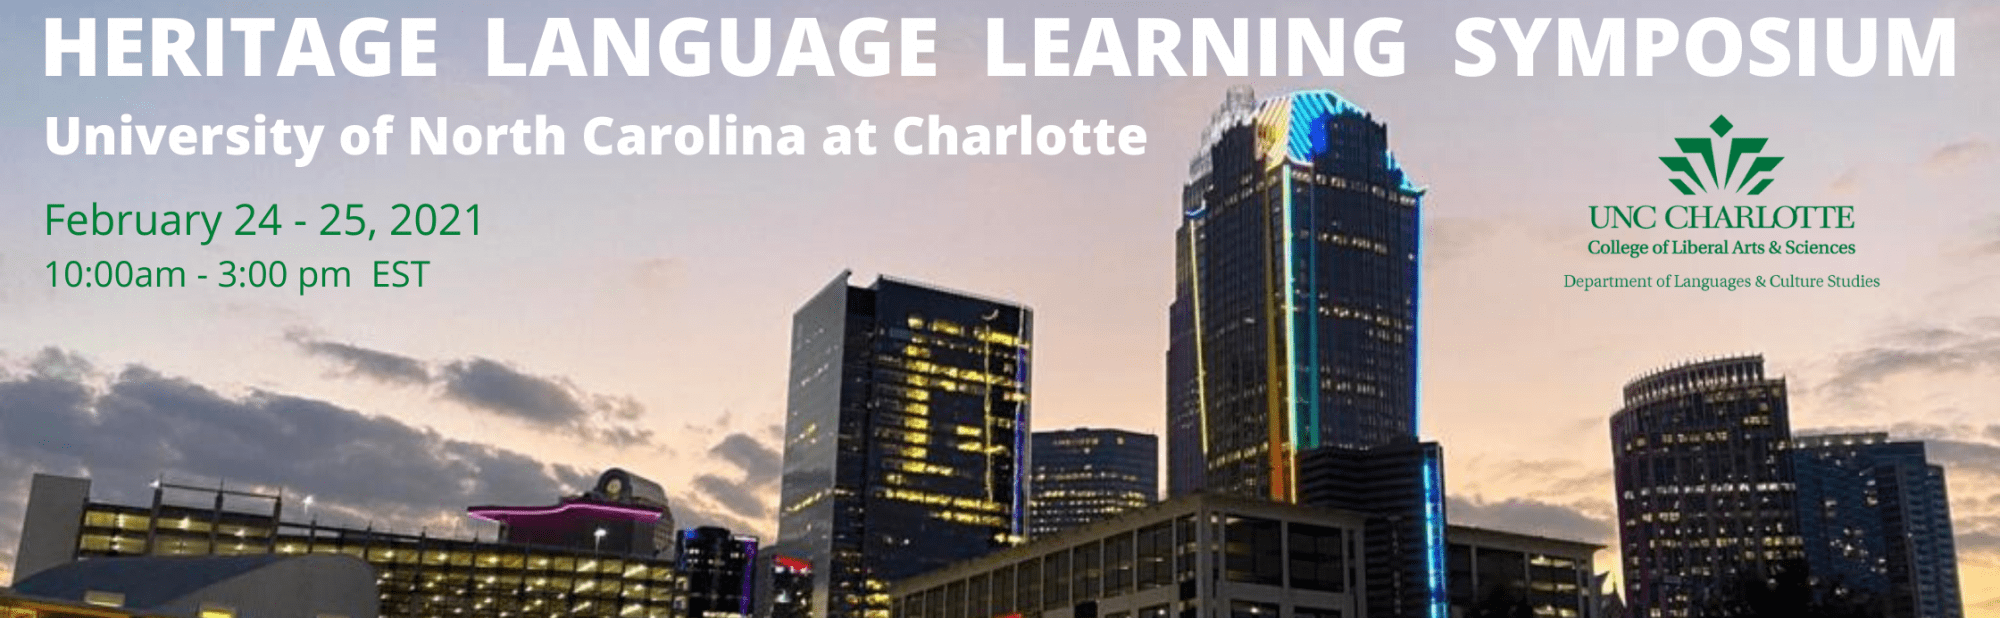 Heritage Language Learning Symposium banner